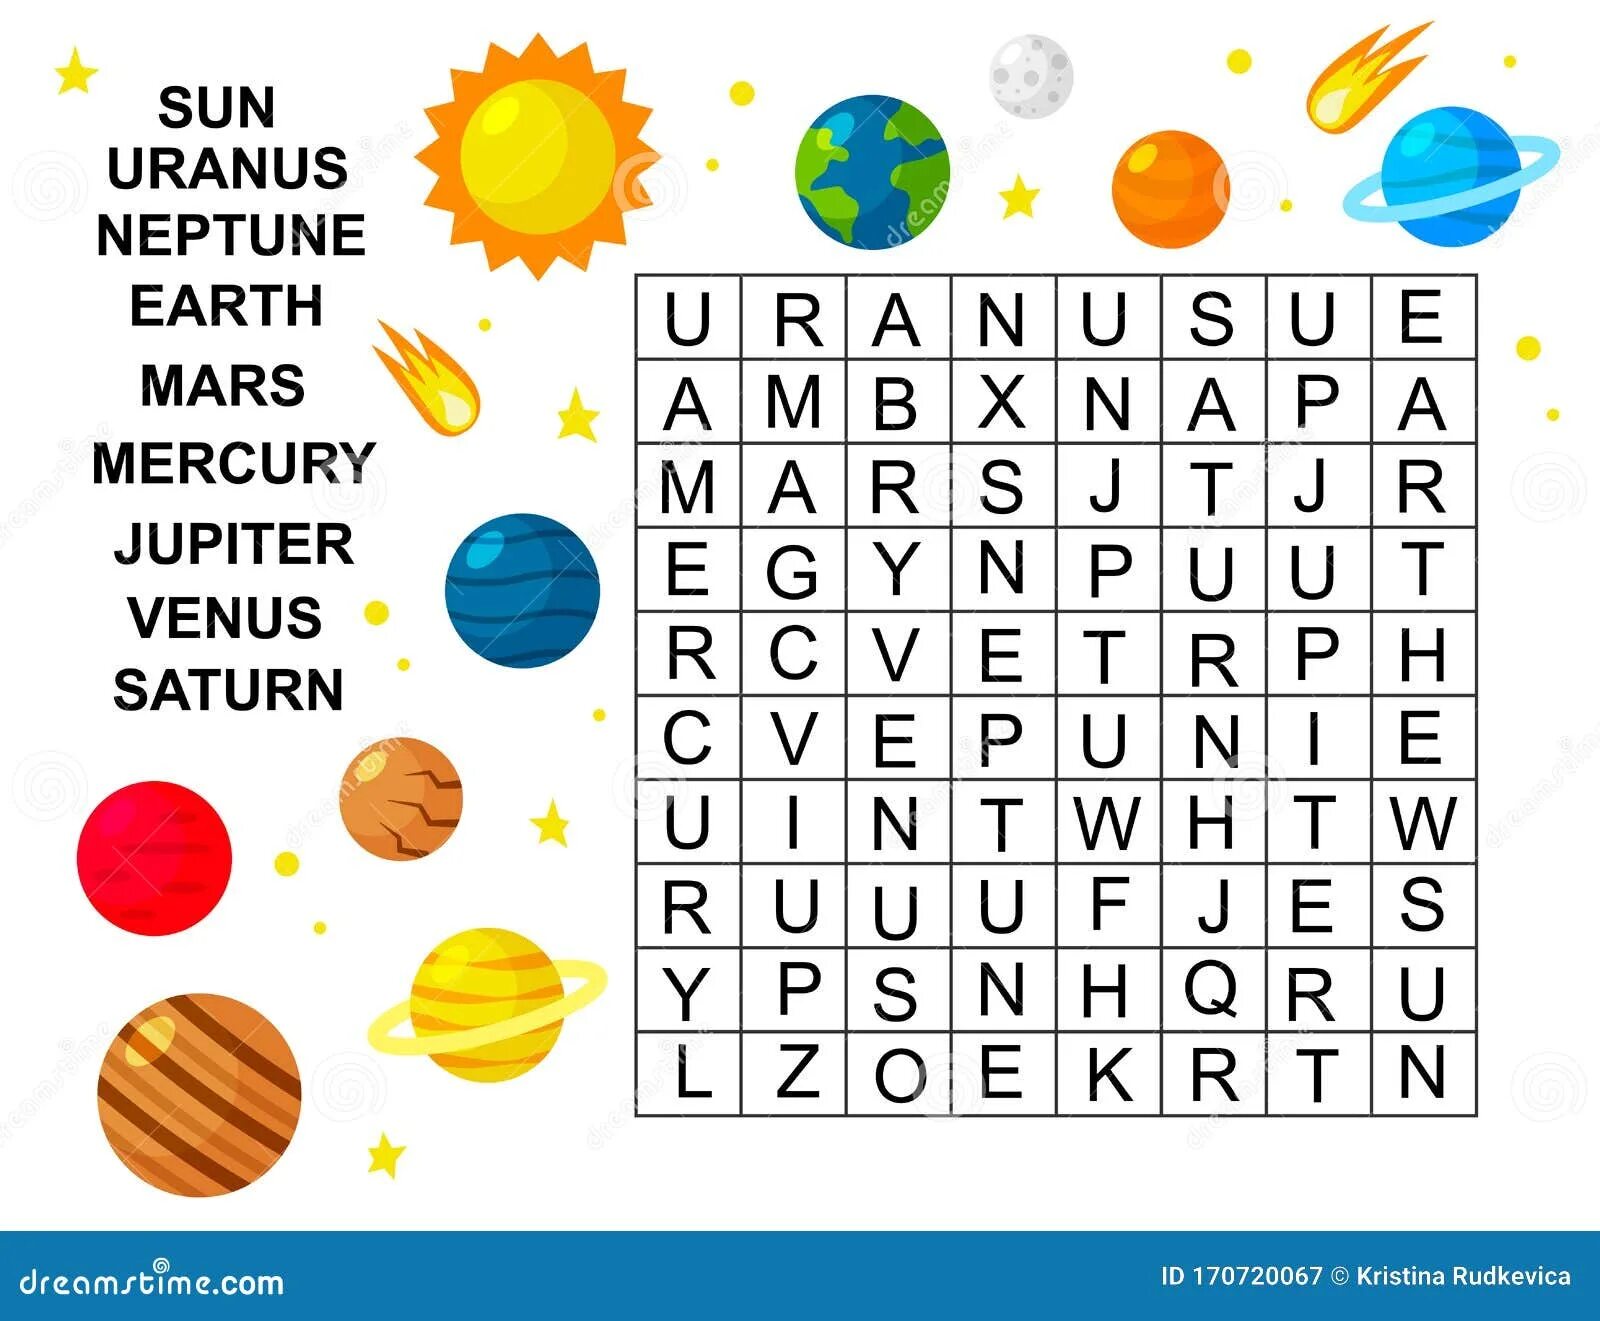 Найди космические слова. Планеты задания для детей. Солнечная система на английском. Английский для детей тема космос. Планеты солнечной системы задания для детей.